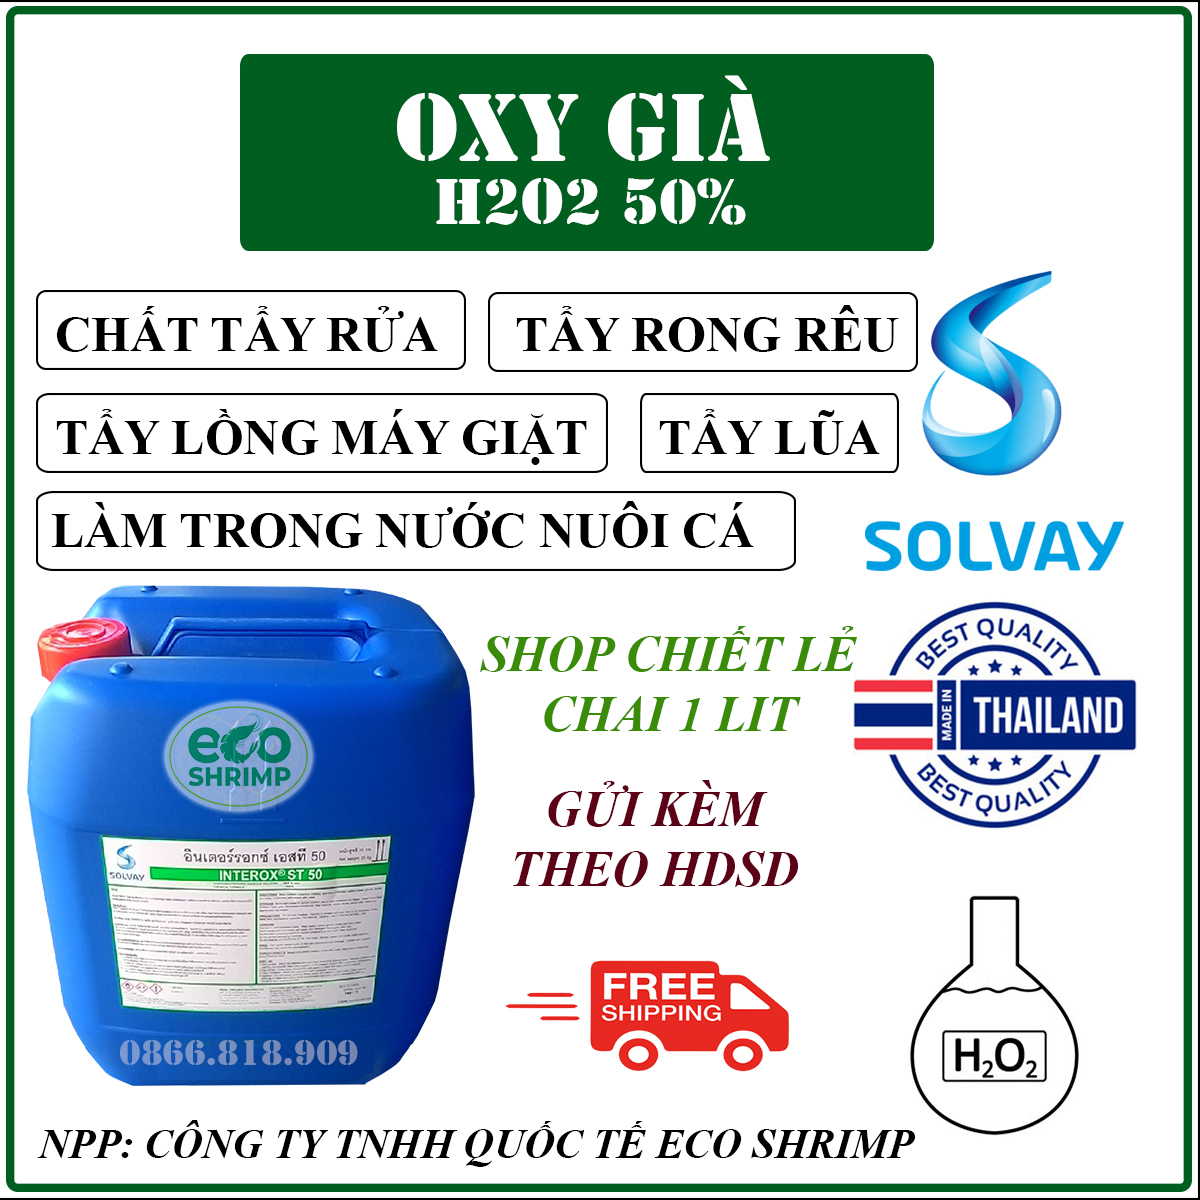 1 Lit Oxy Già Thái Lan H2O2 Tẩy Lồng Máy Giặt - Tẩy Rong Rêu - Tẩy Lũa - Làm Trong Nước